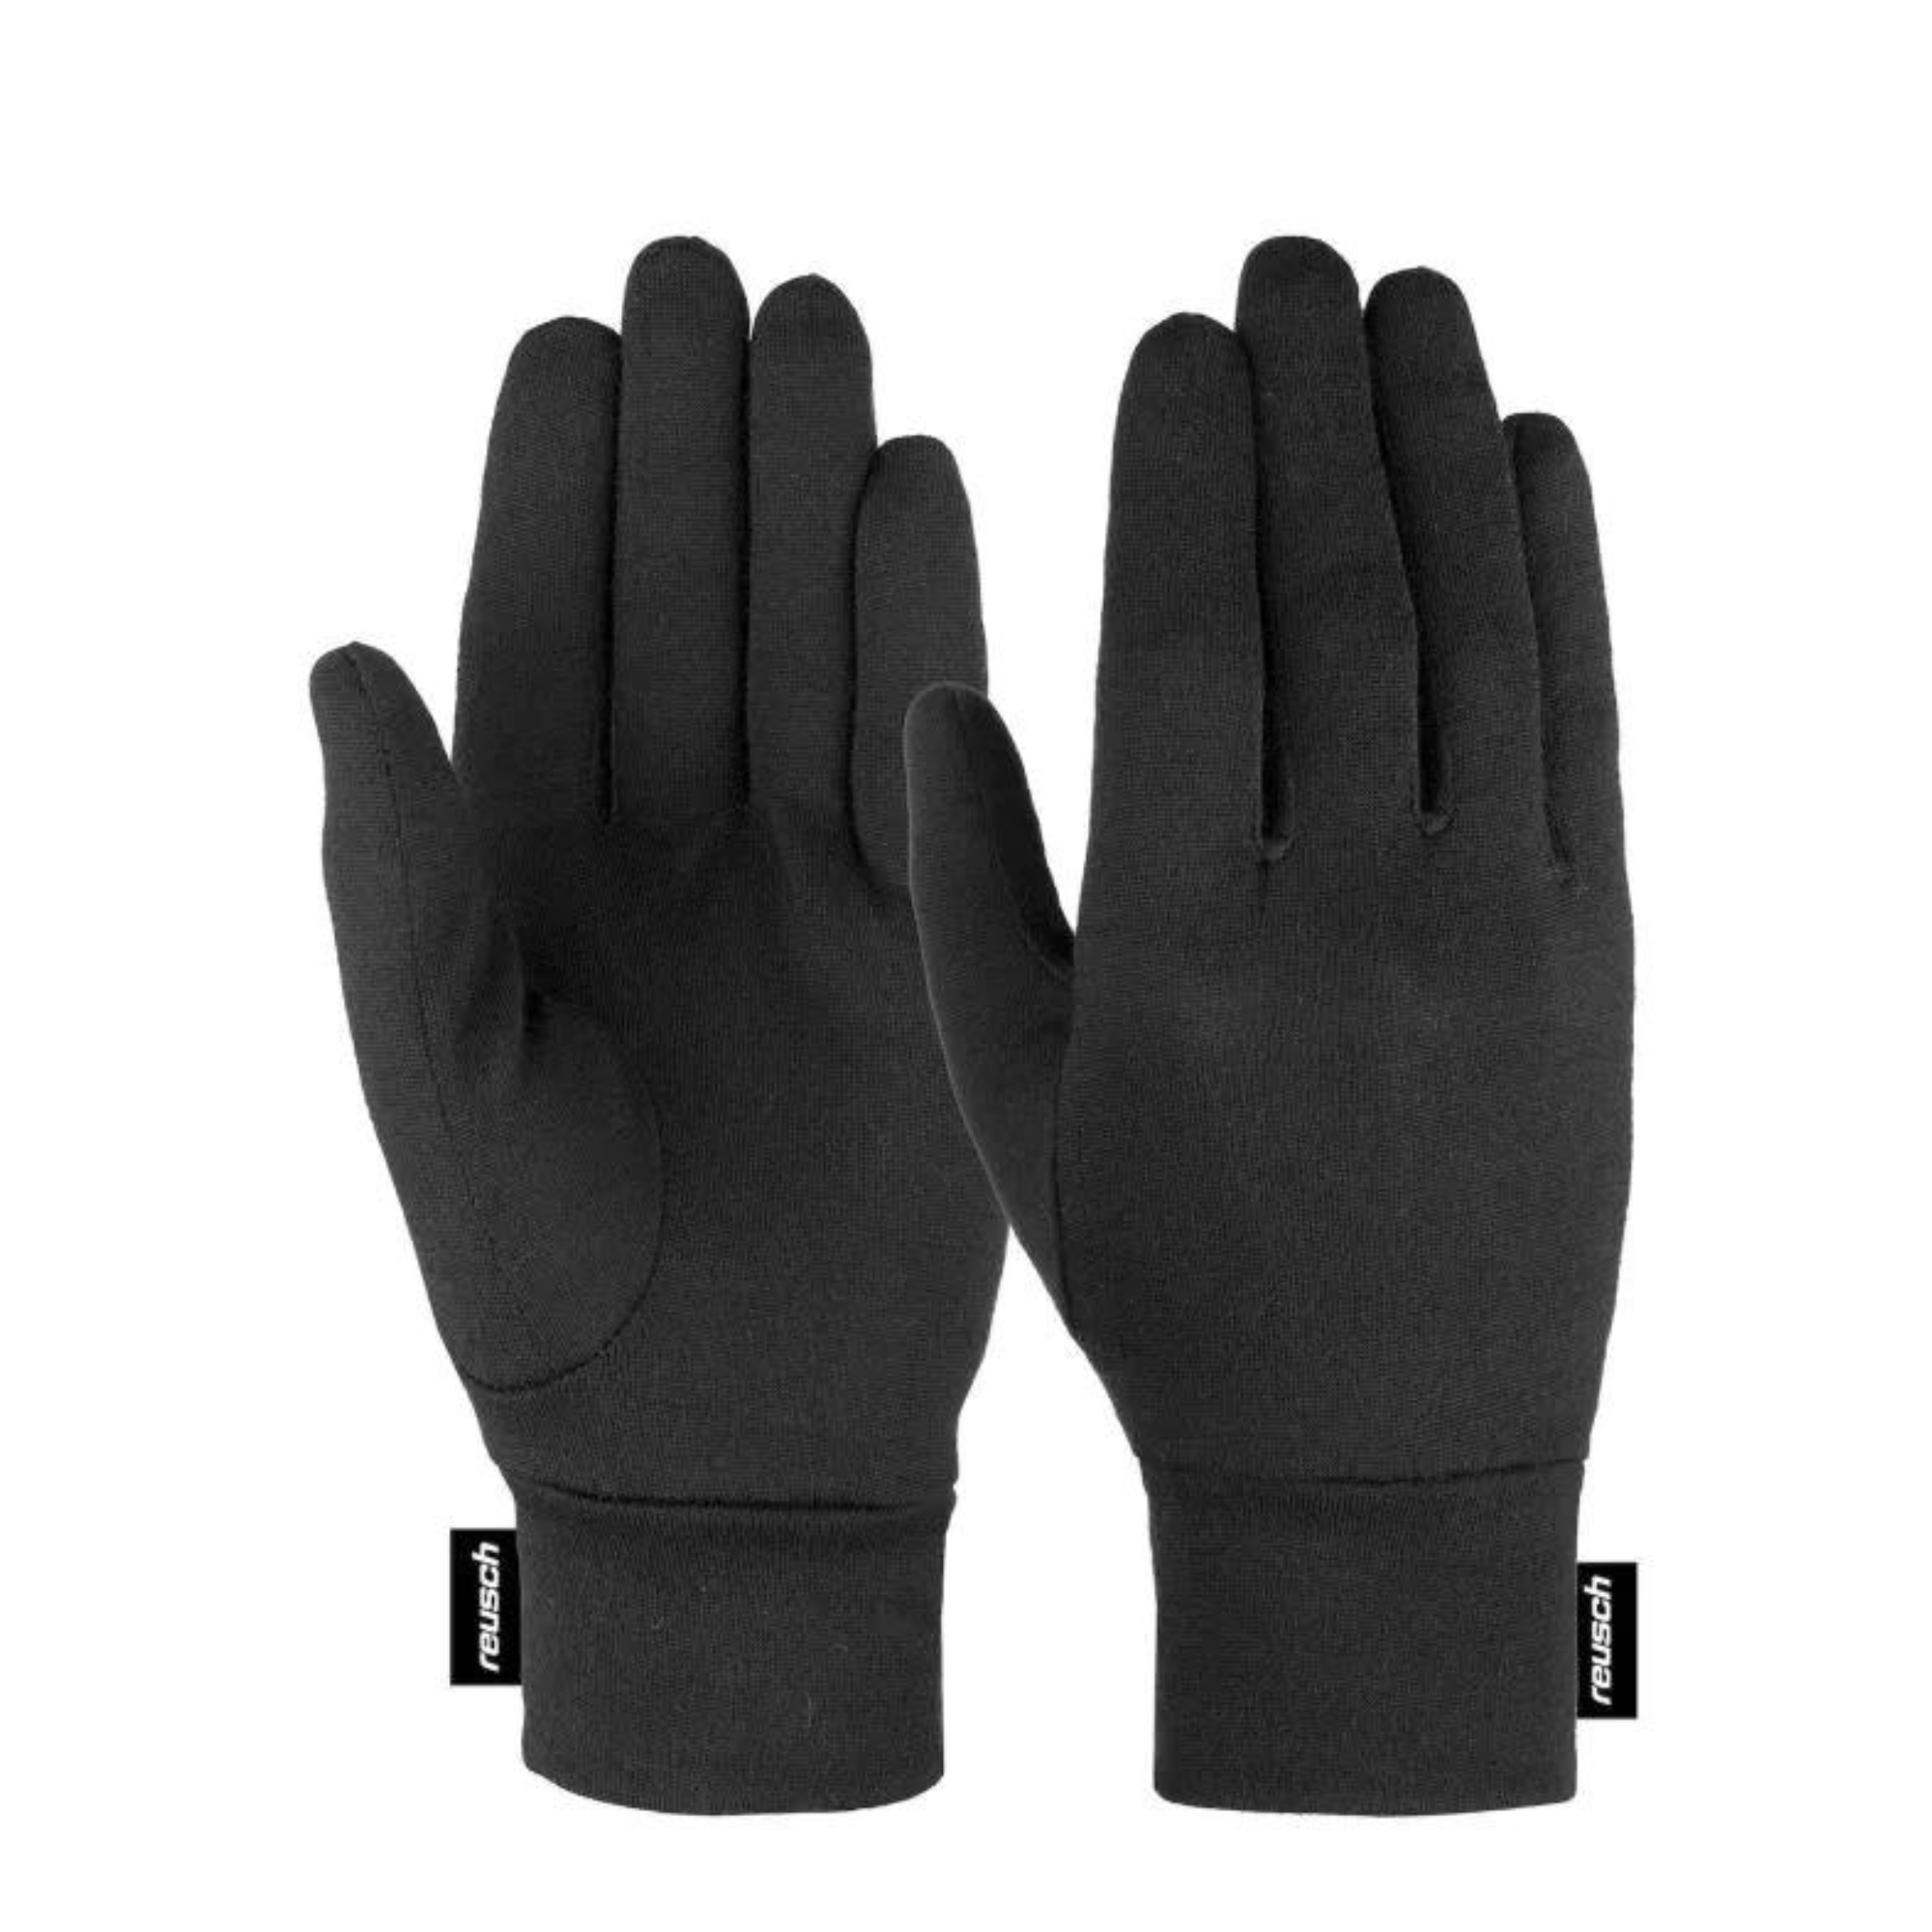 Reusch Merino Wool Conductive - Inner gloves